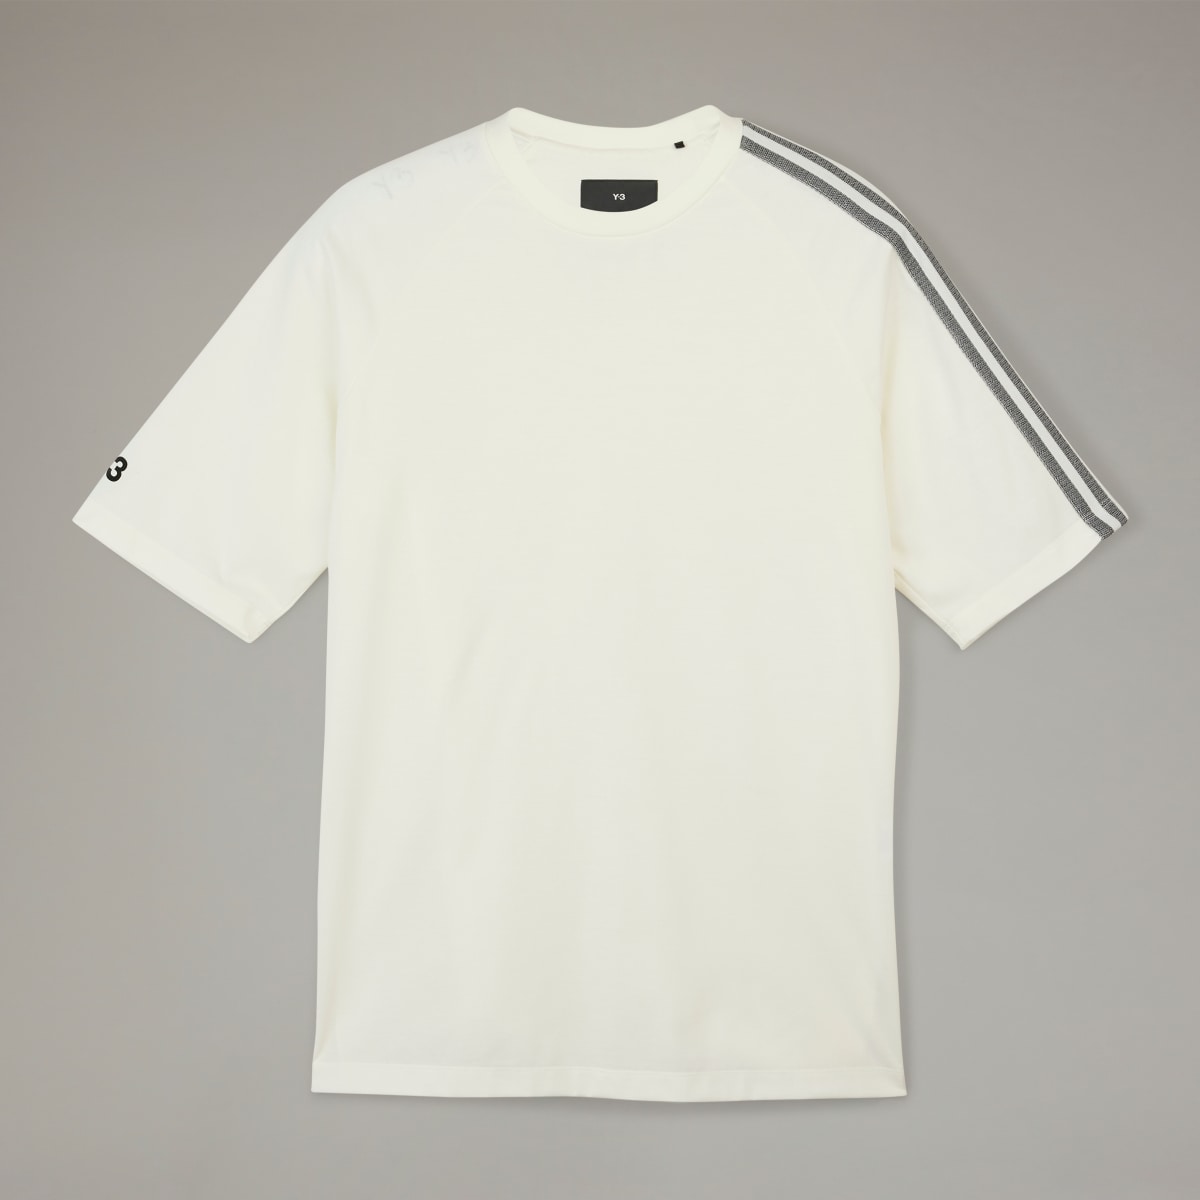 Adidas Y-3 3-Streifen T-Shirt. 5